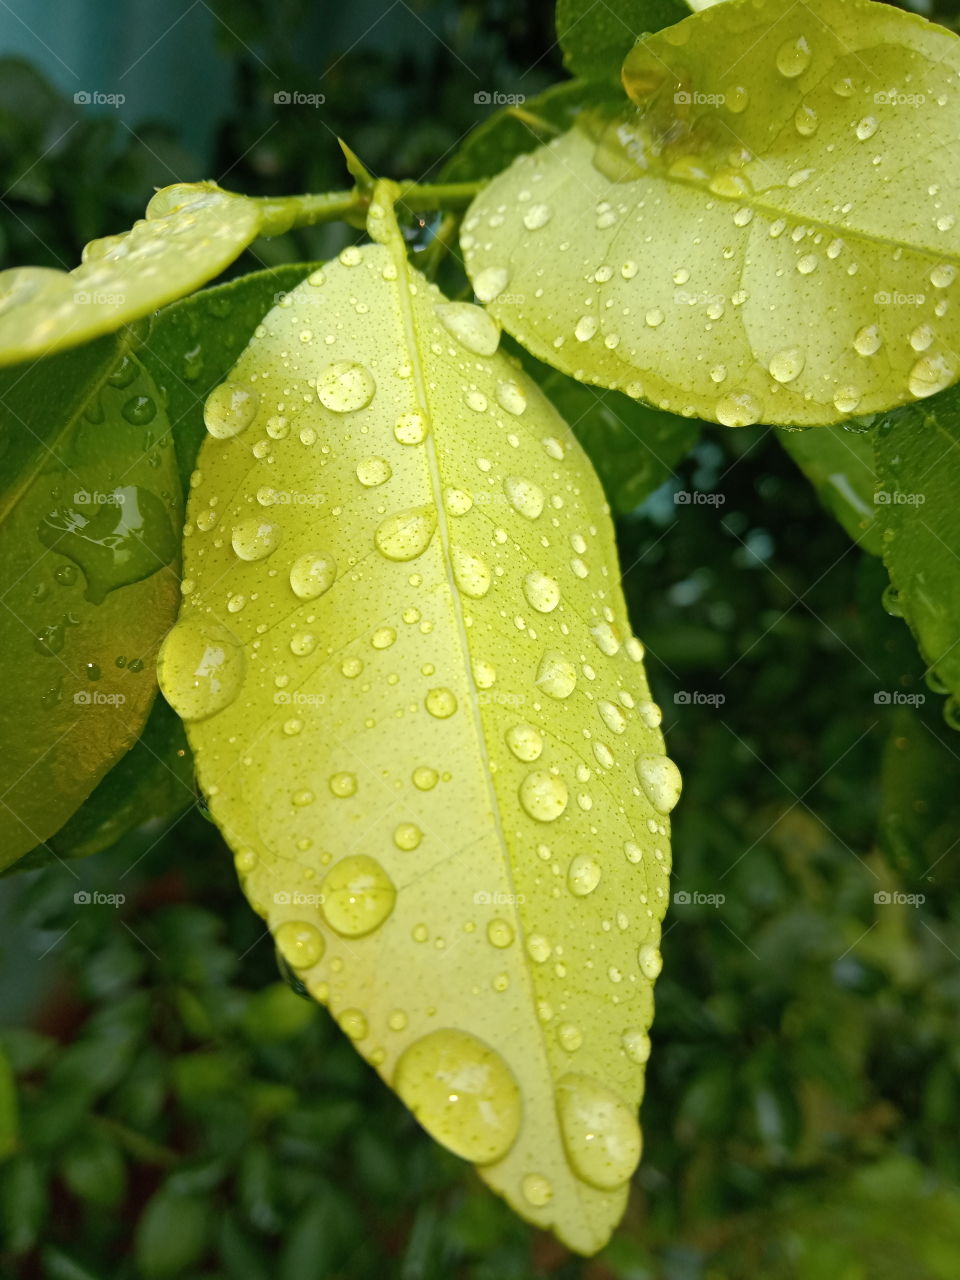 Water drop on Lemon leafs.